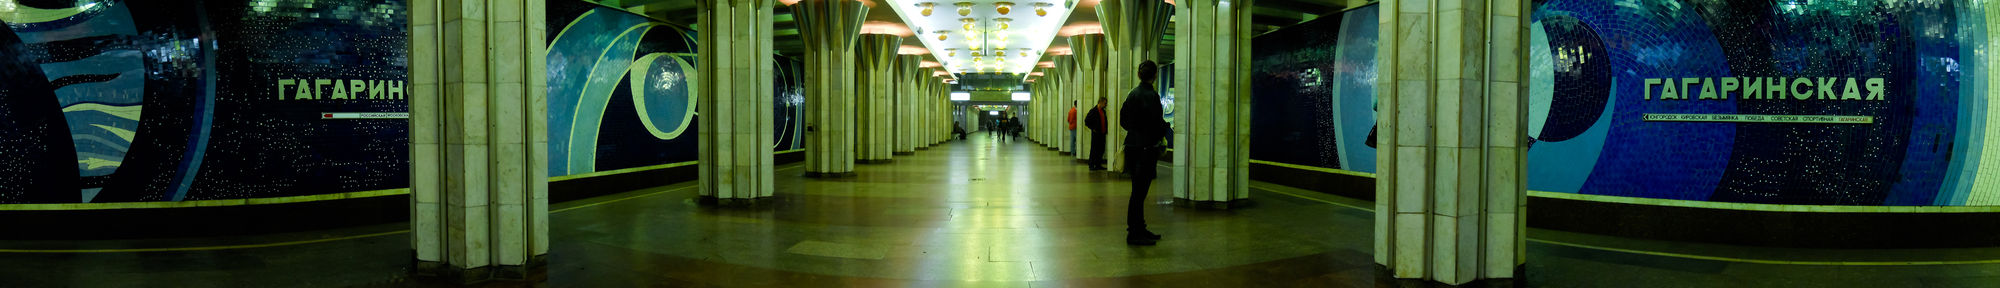 Panorama stanice metra